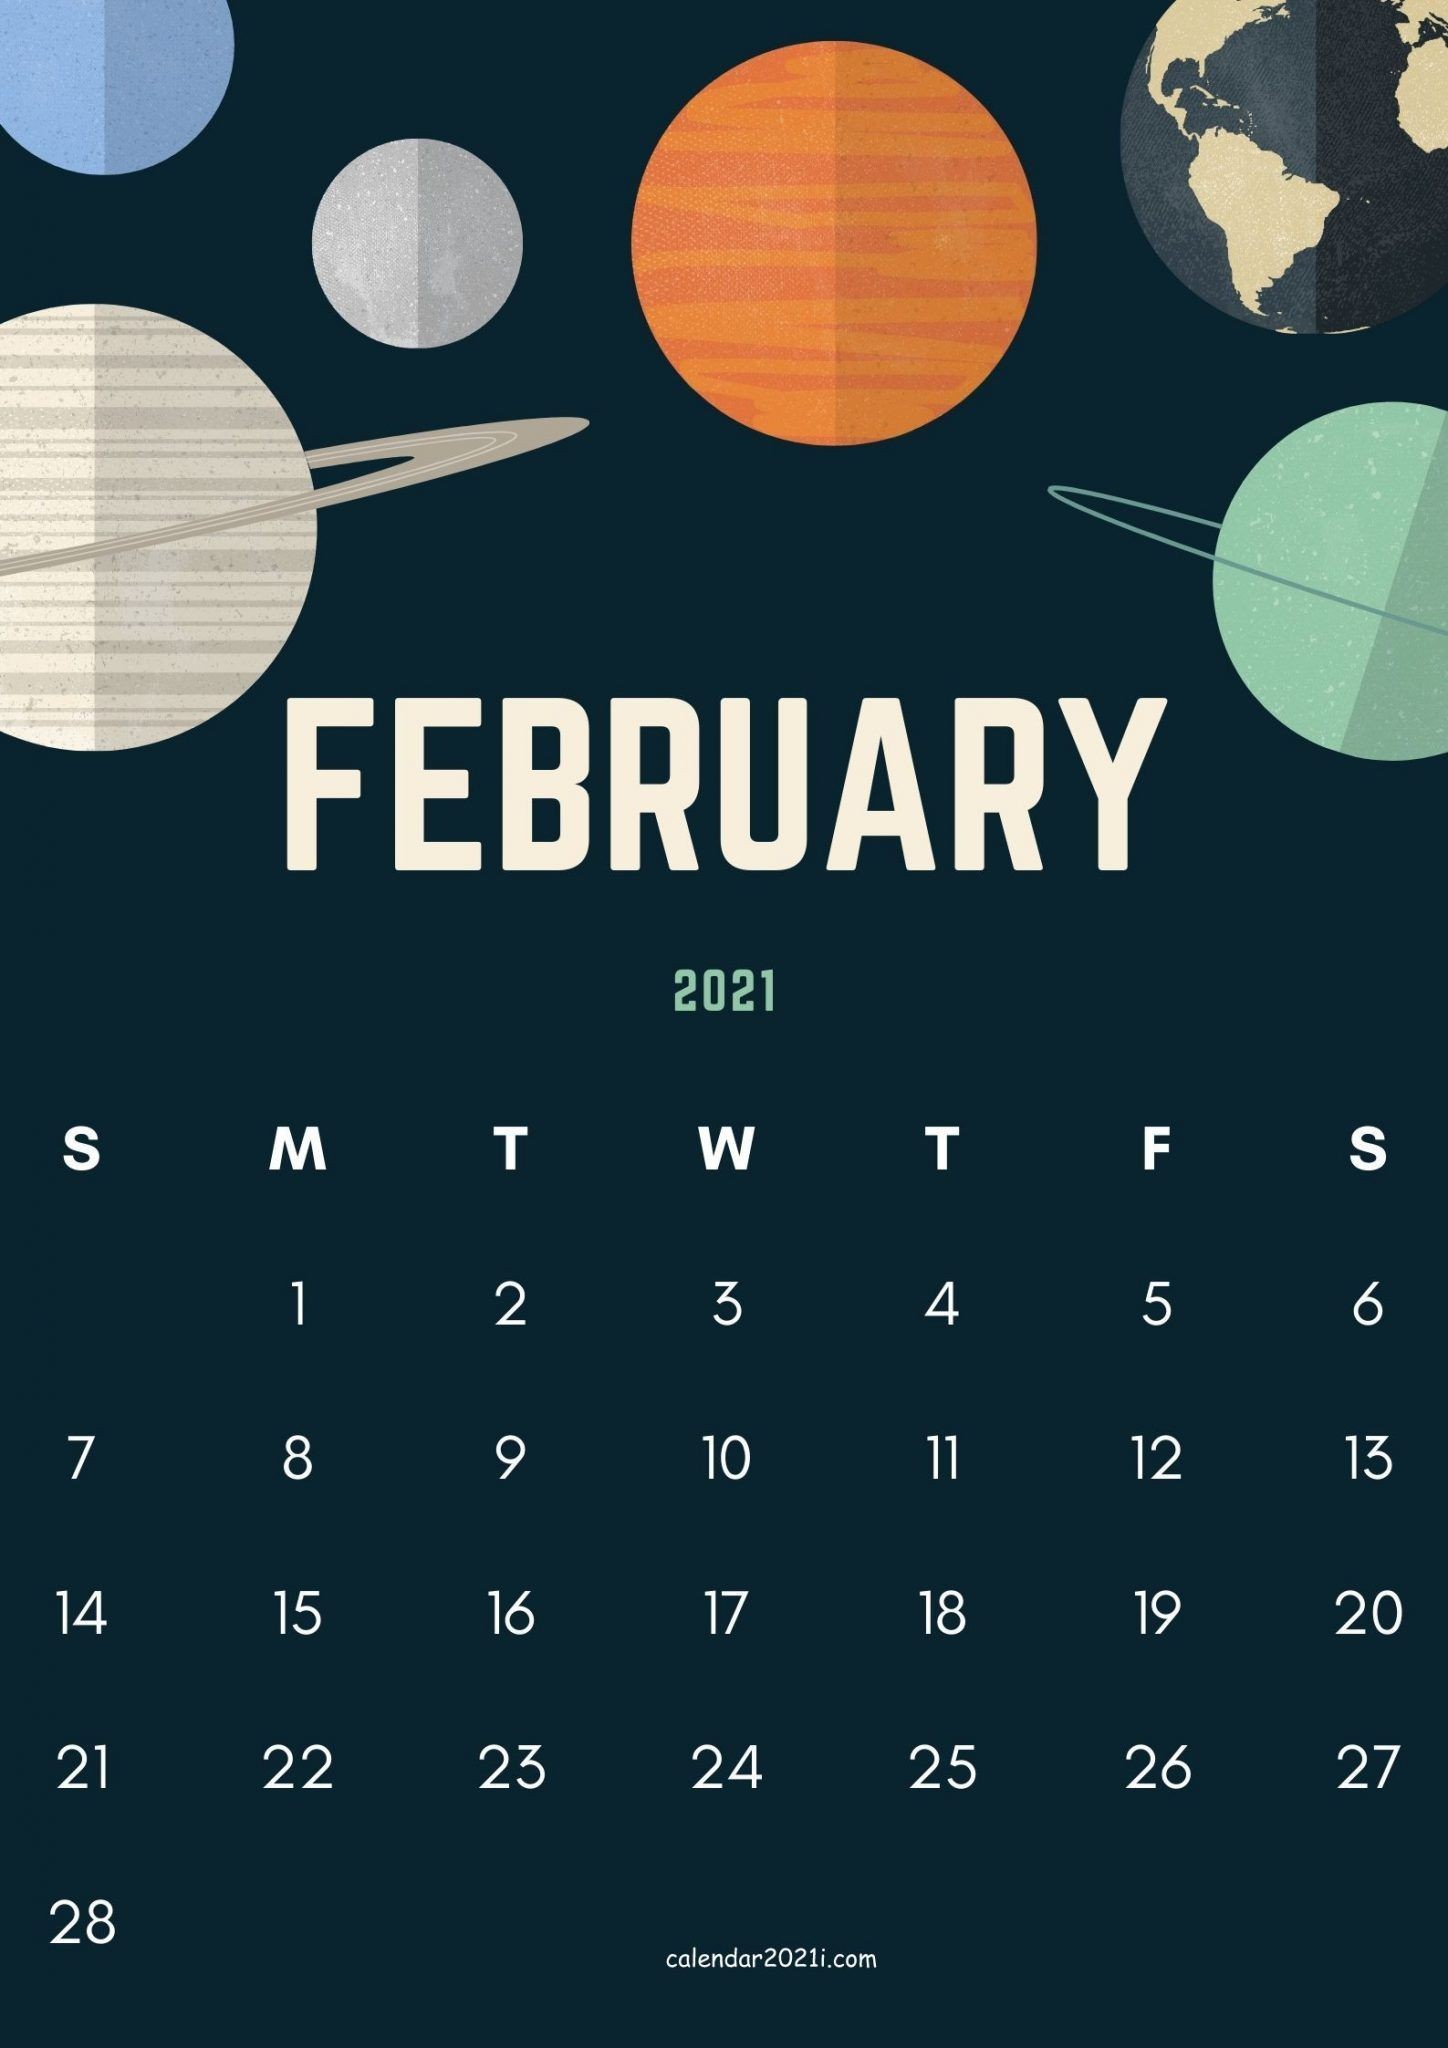 February 2021 Cute Calendar Design in 2020